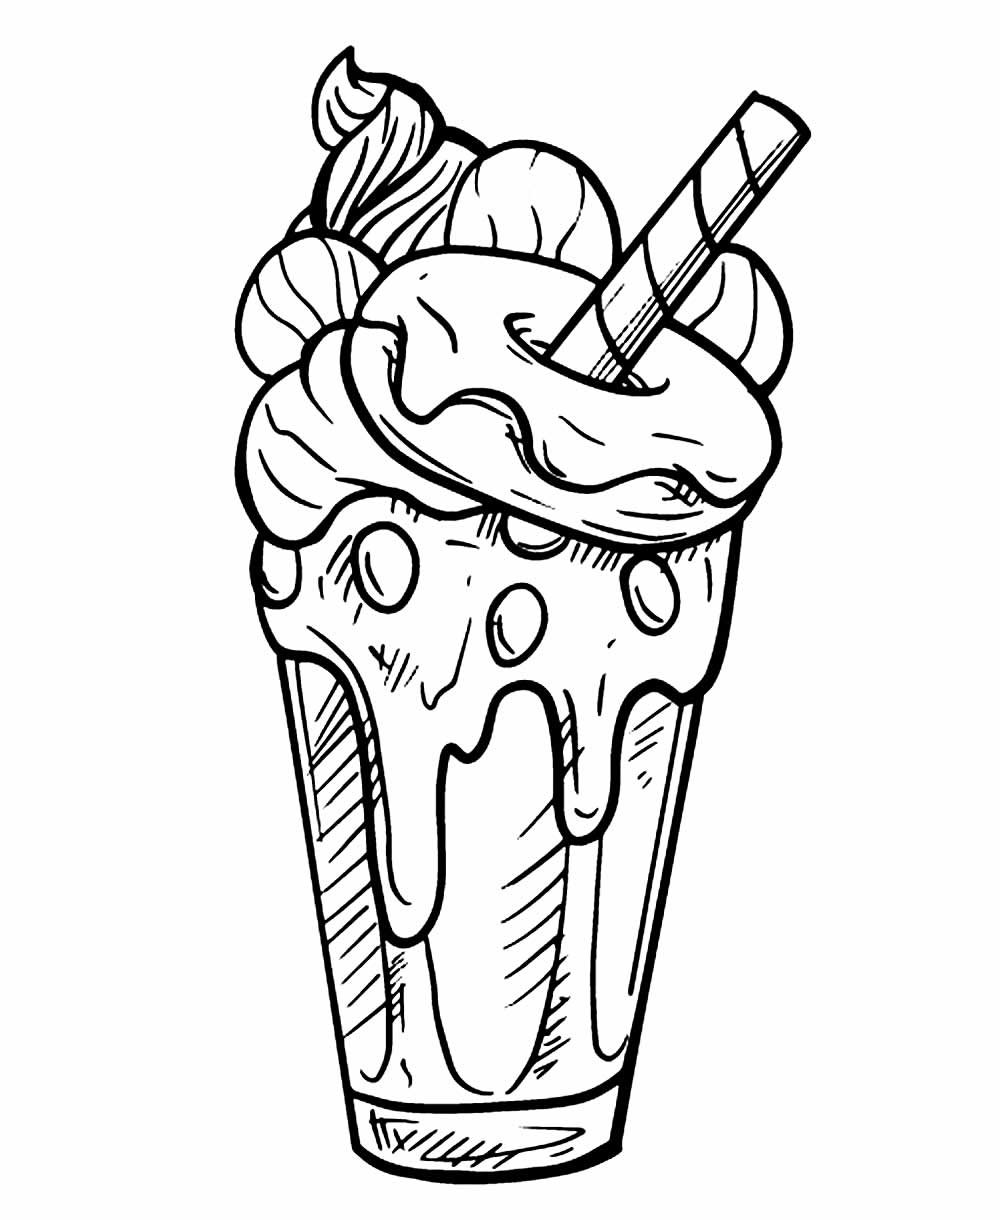 Desenhos de Milk-shake para colorir - Bora Colorir